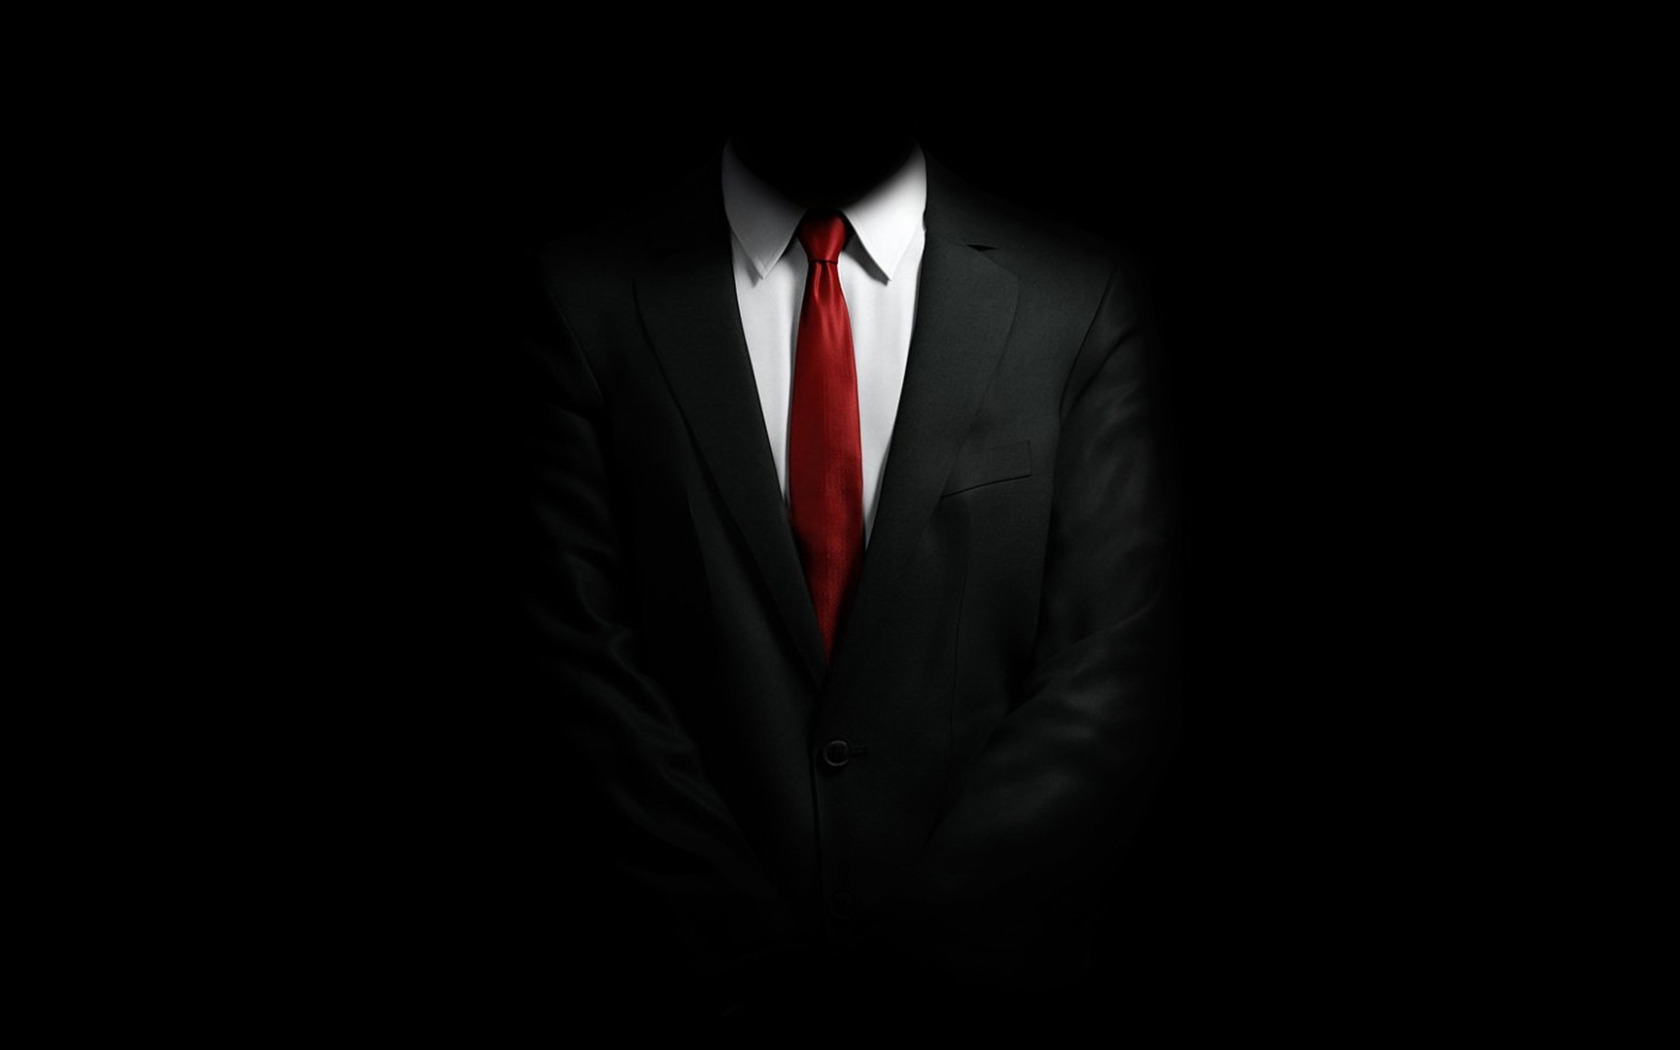 Черный мужской фон. Черный пиджак красный галстук. Человек в костюме в темноте. Смокинг на черном фоне. Костюм на черном фоне.